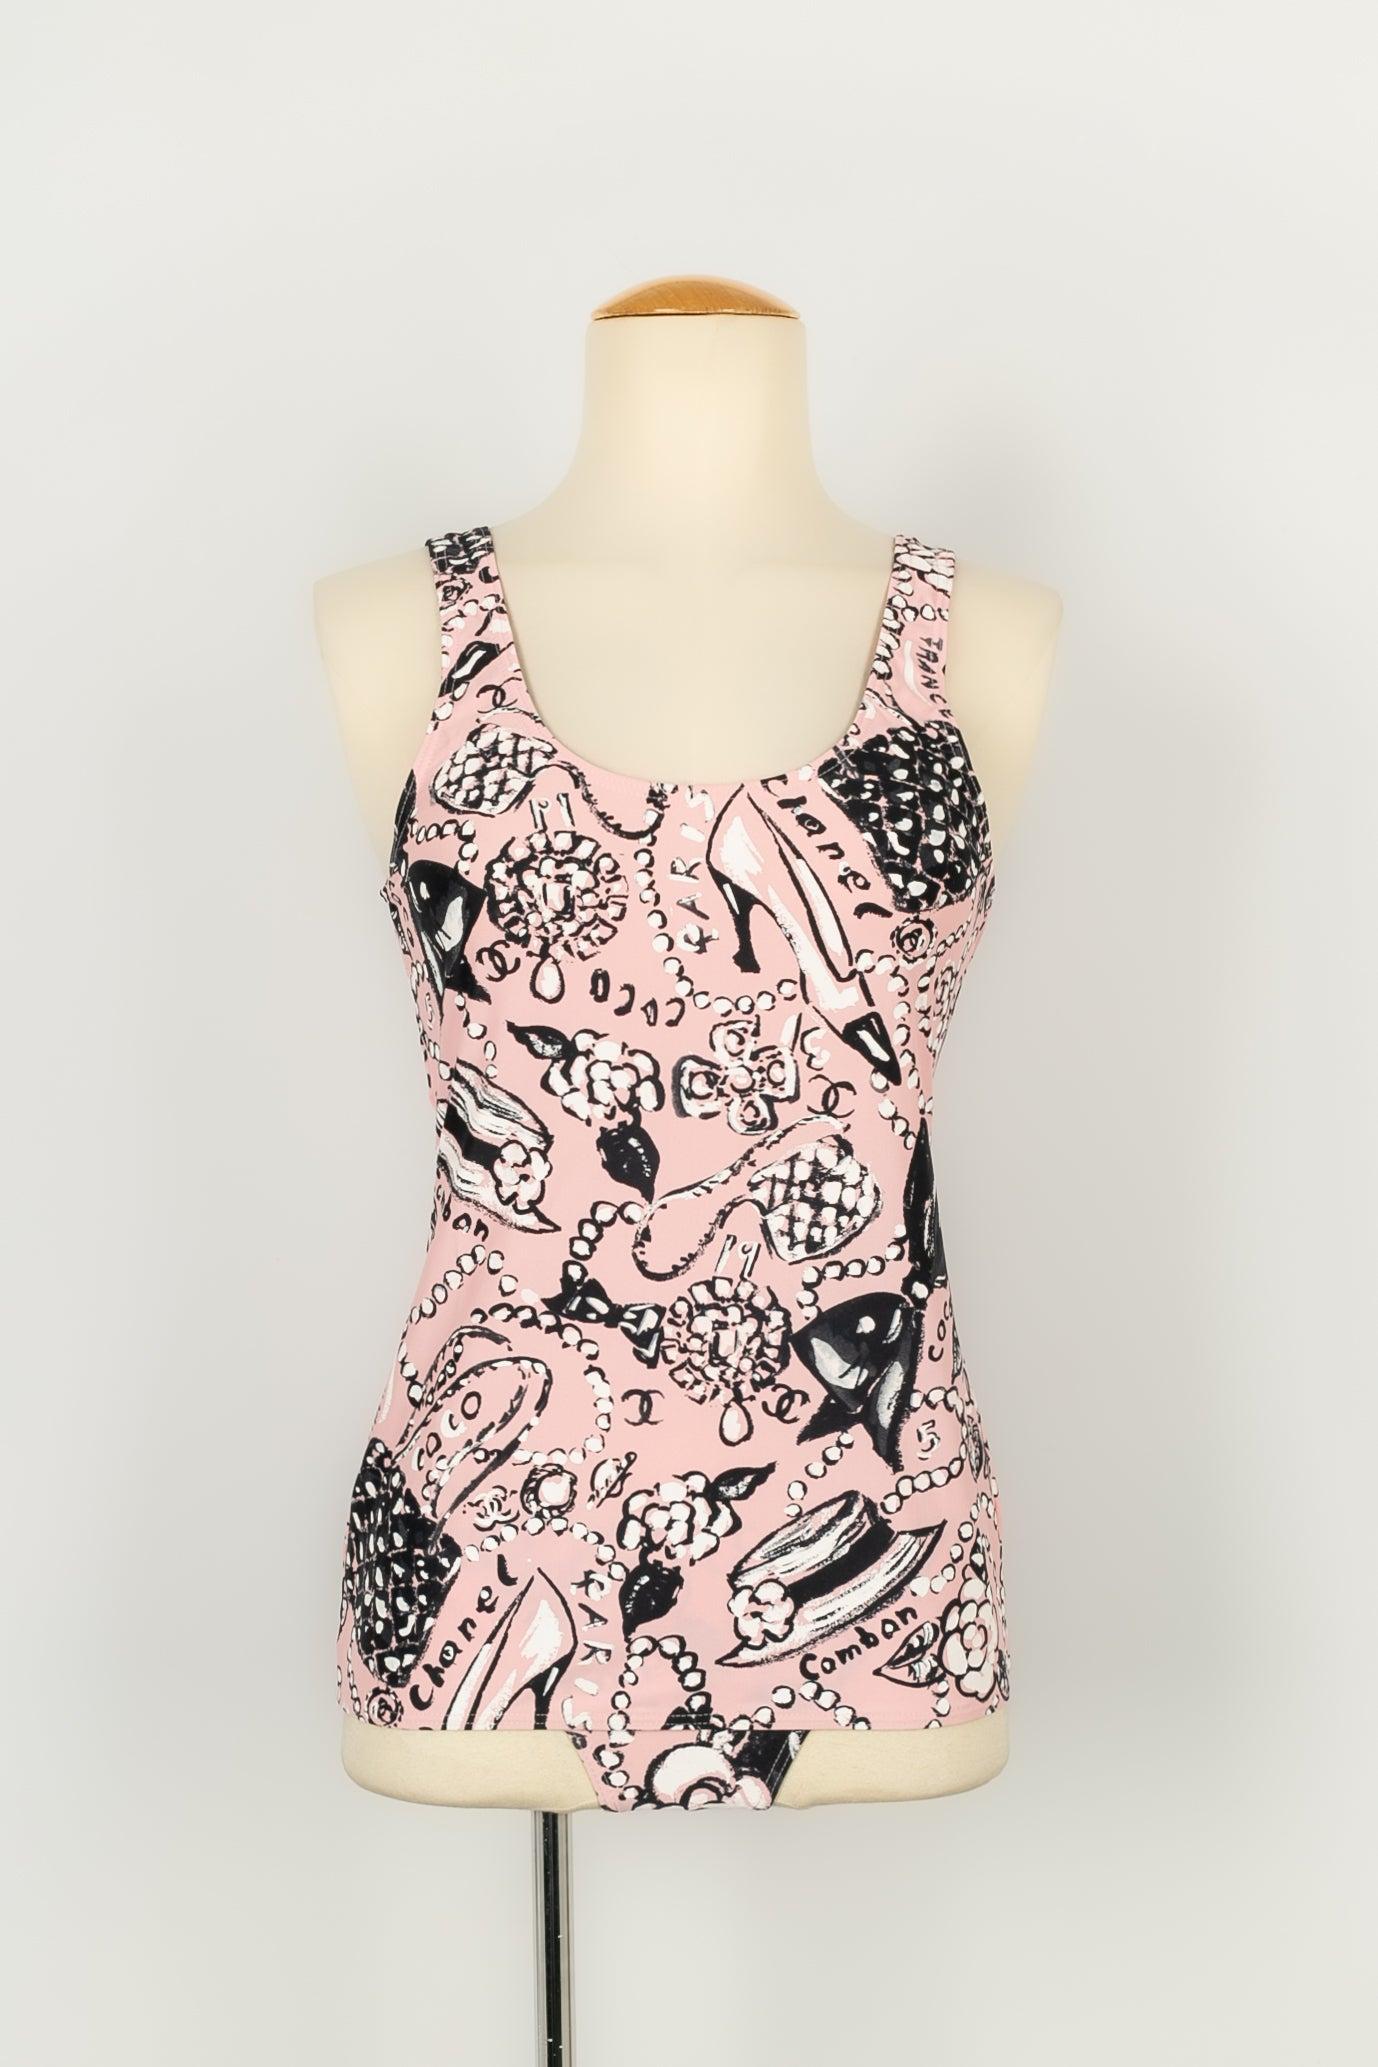 Chanel - (Made in France) Set bestehend aus einem Oberteil, einem Bikiniunterteil und einem Foulard-Augenschutz mit schwarz-weißem Druck auf rosa Hintergrund. Angegebene Größe 40FR. Frühjahr-Sommer 1993-1994 Collection'S.

Zusätzliche